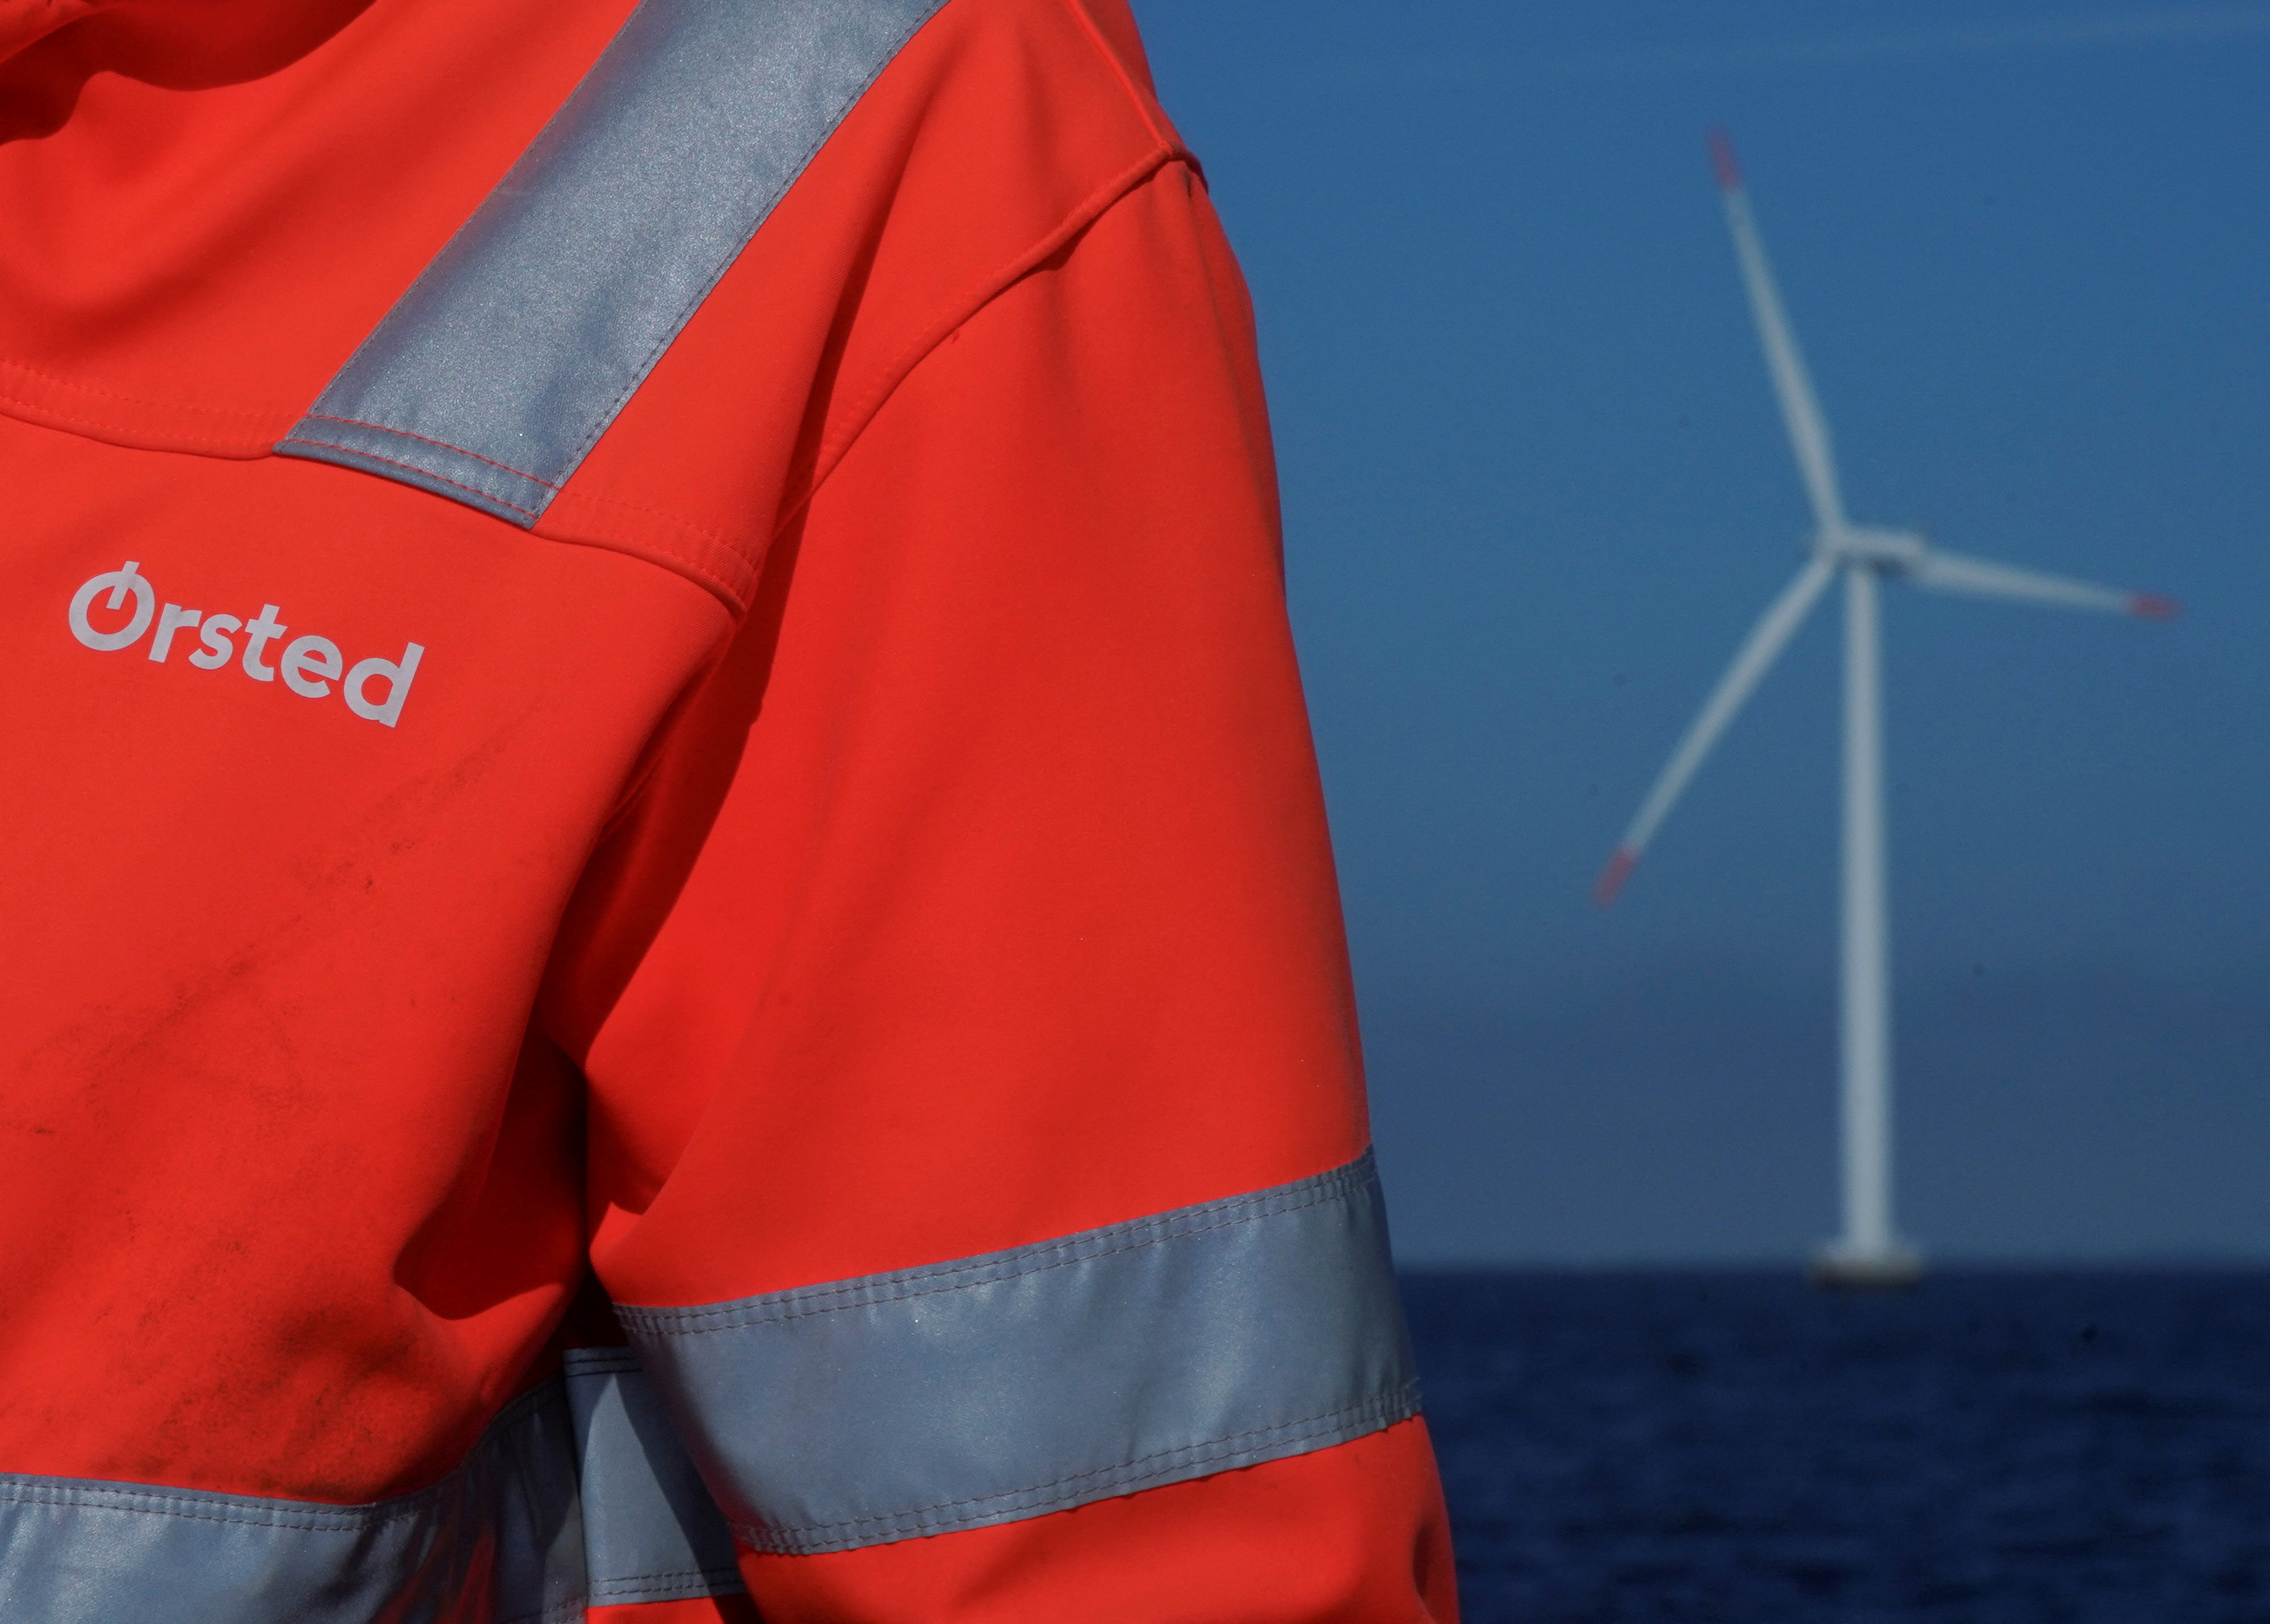 오르스테드 로고는 네스테드 근처 오르스테드 해상 풍력 발전소 직원이 입고 있는 재킷에서 볼 수 있습니다.